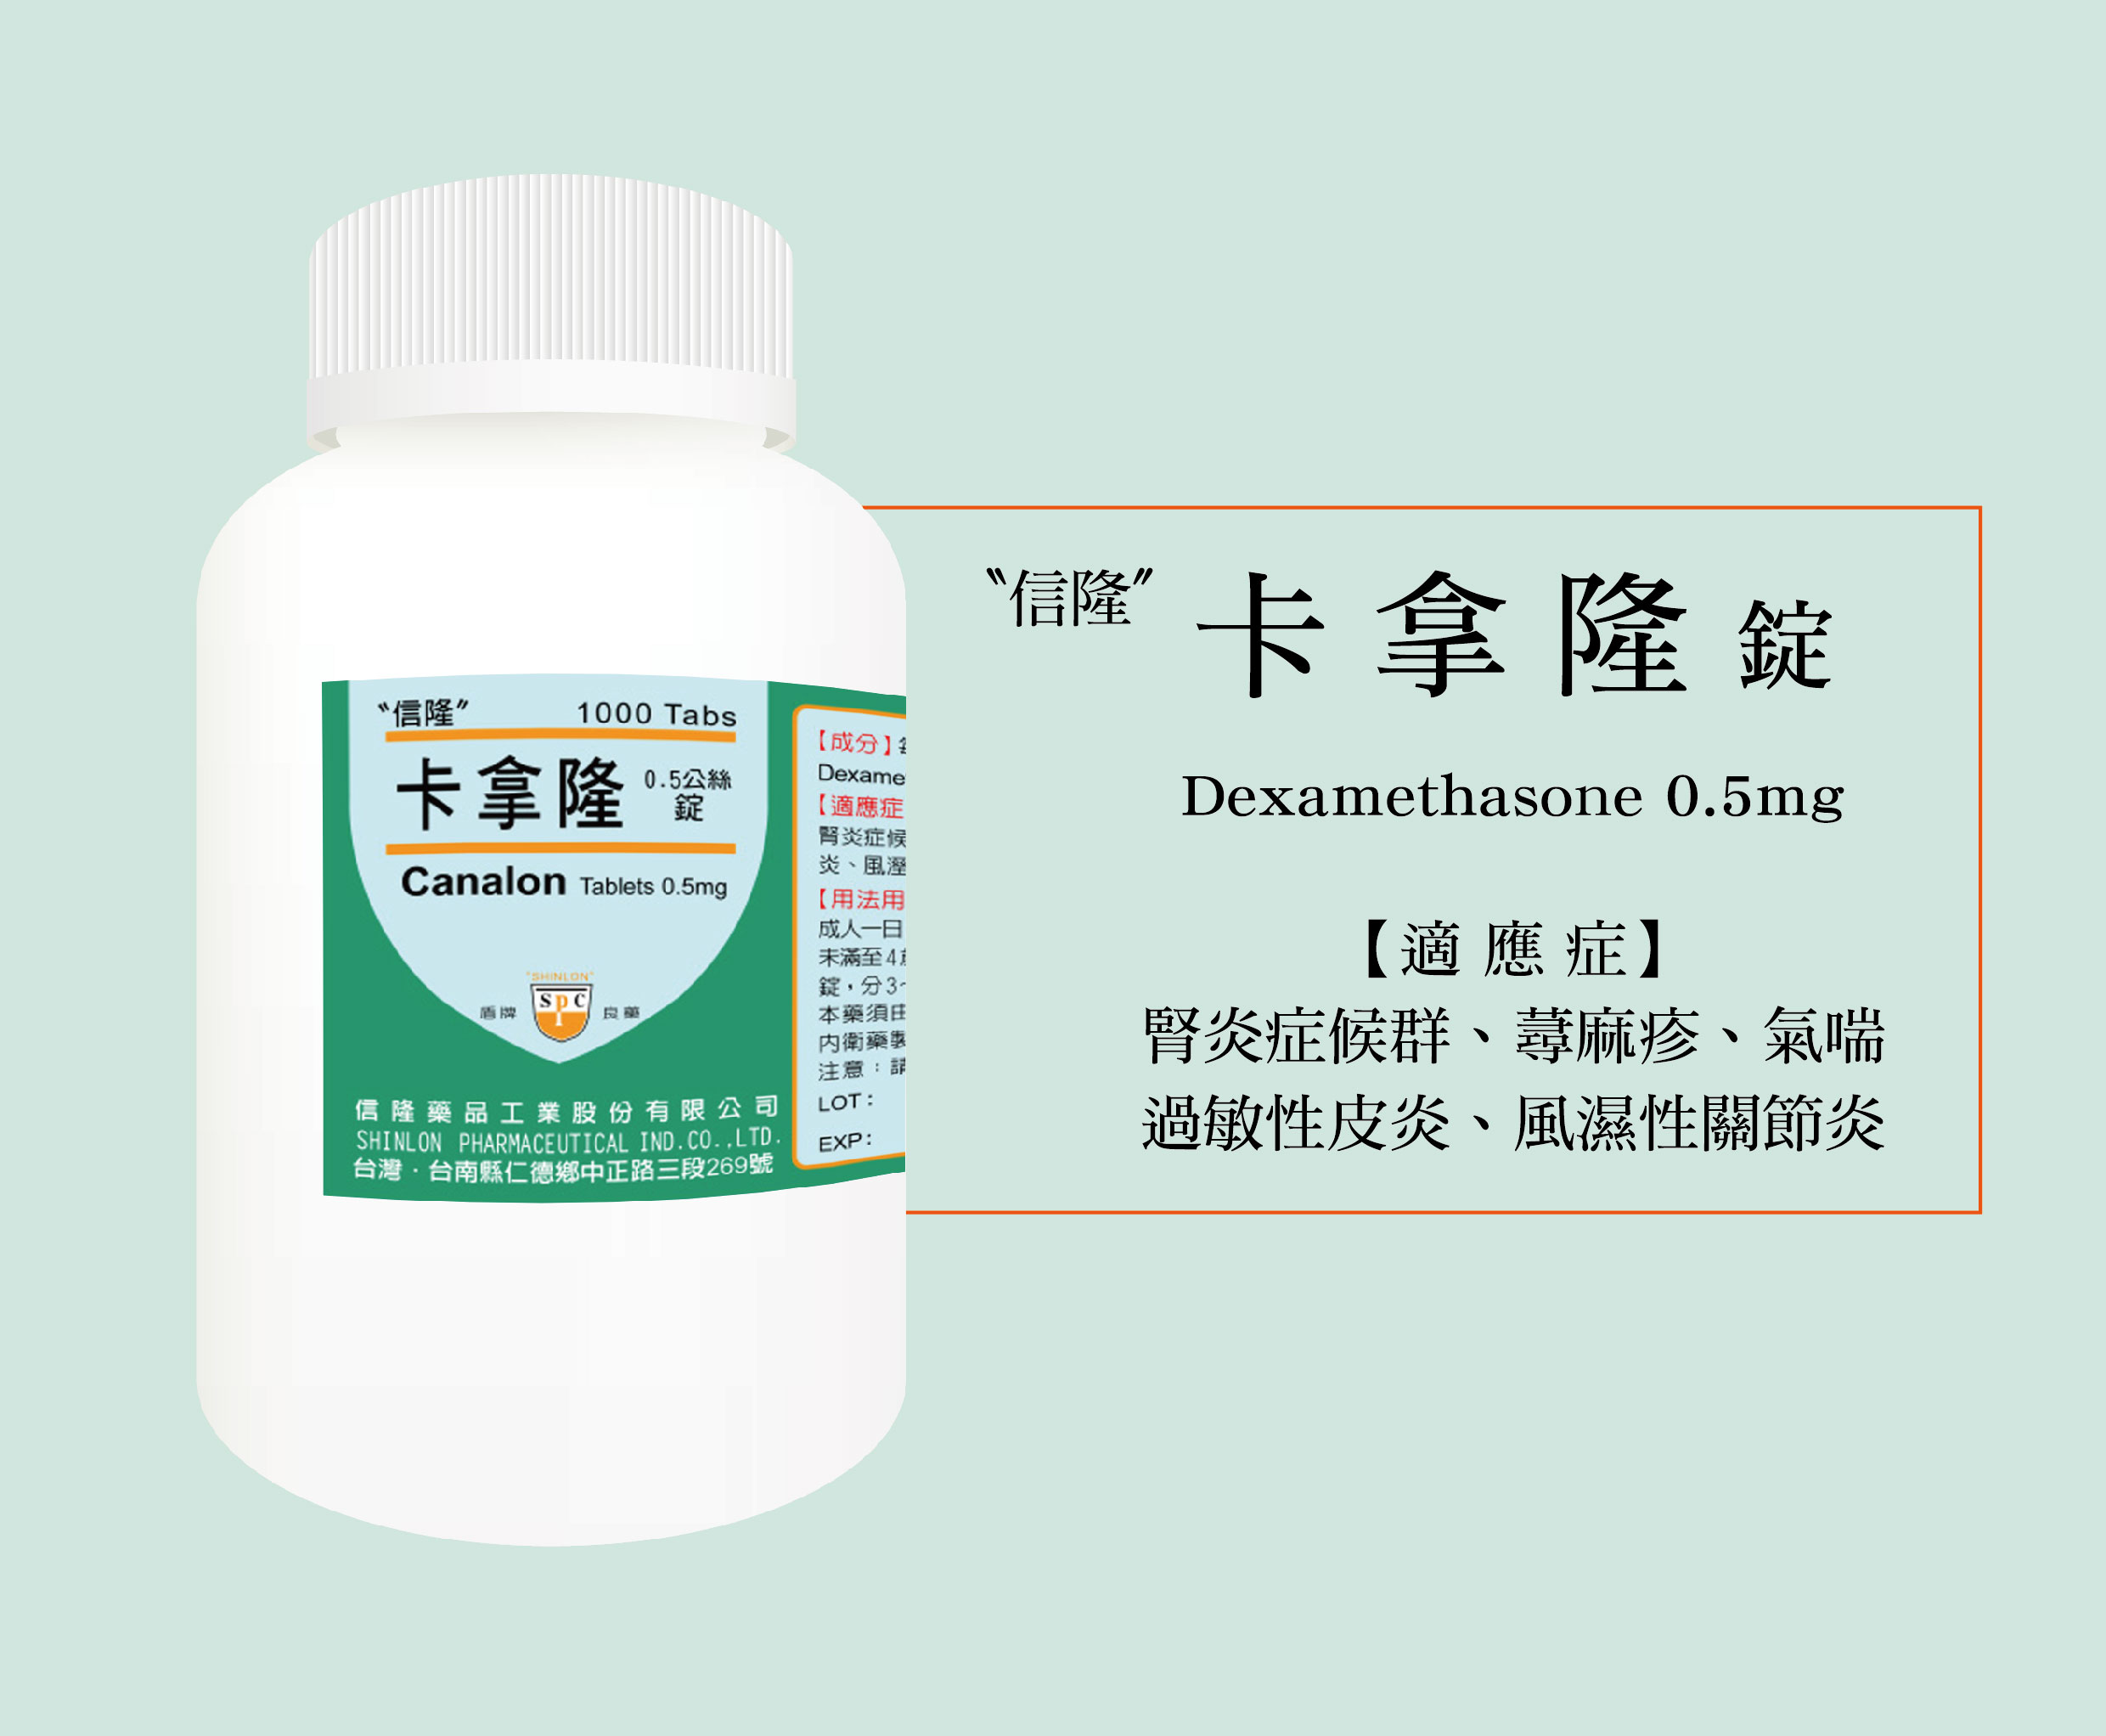 卡拿隆錠 Dexamethasone 0.5mg